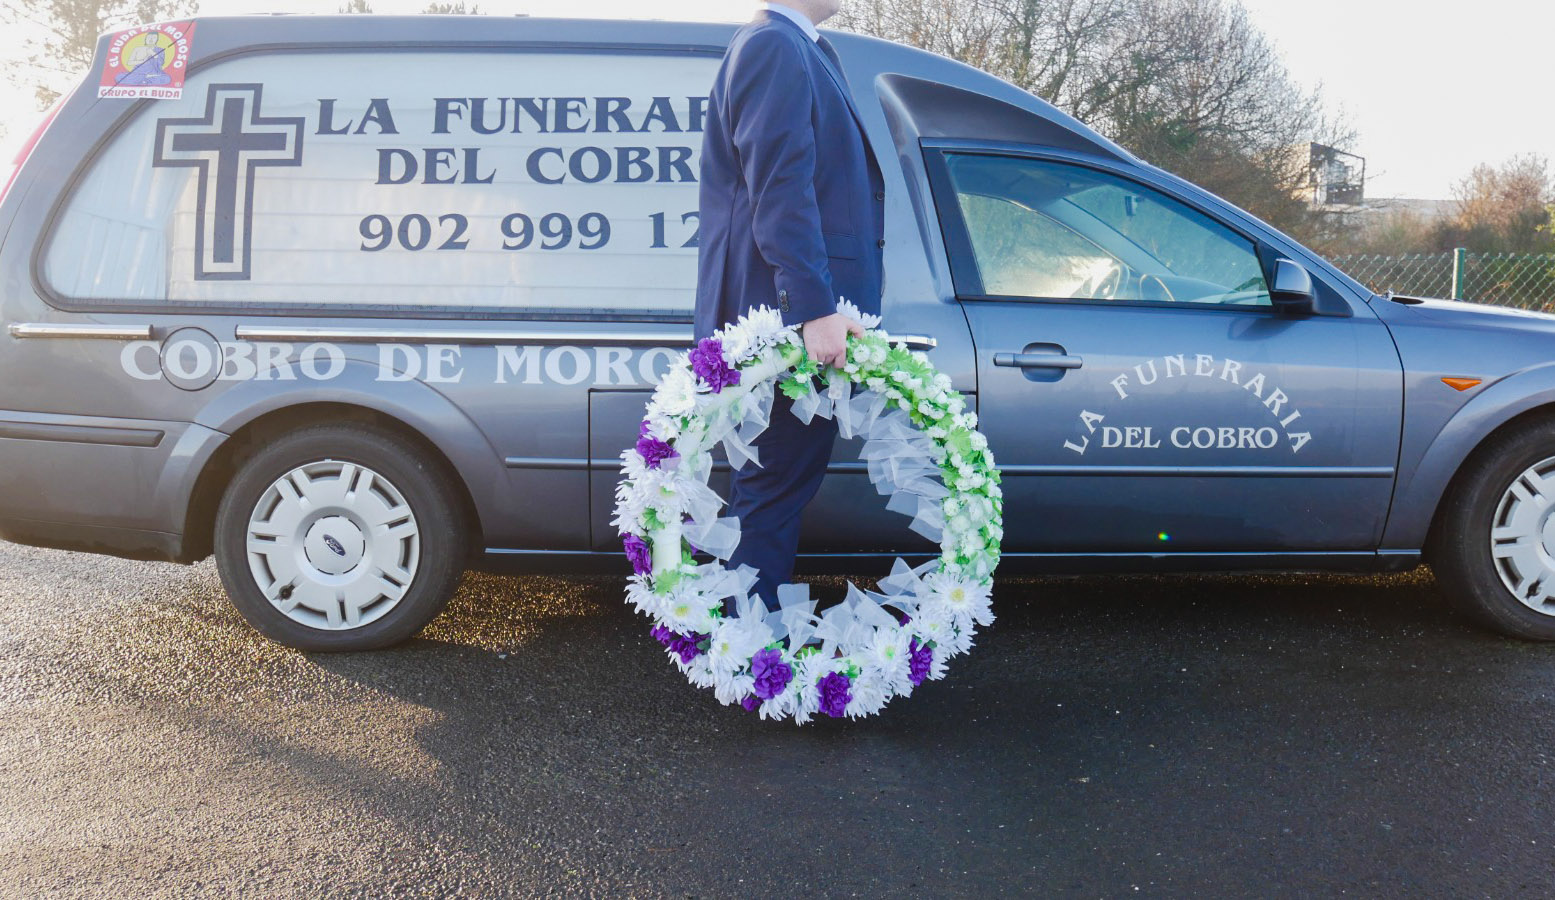 Đòi nợ bằng xe tang bùng nổ ở Tây Ban Nha - Ảnh 1.